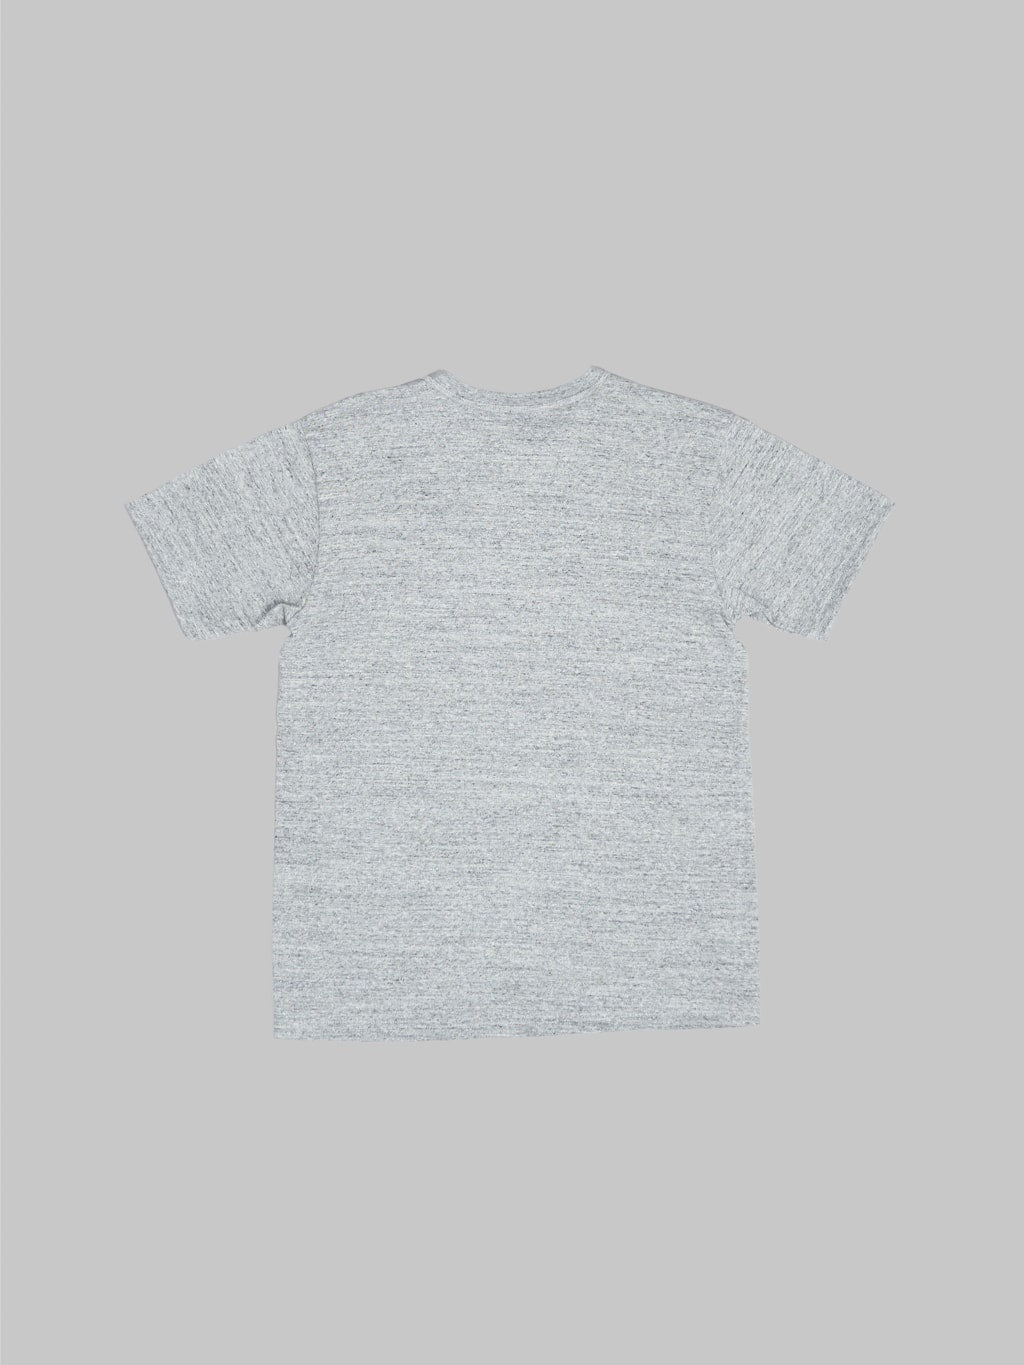 Whitesville Tubular T-Shirt Heather Grey (2 Pack)